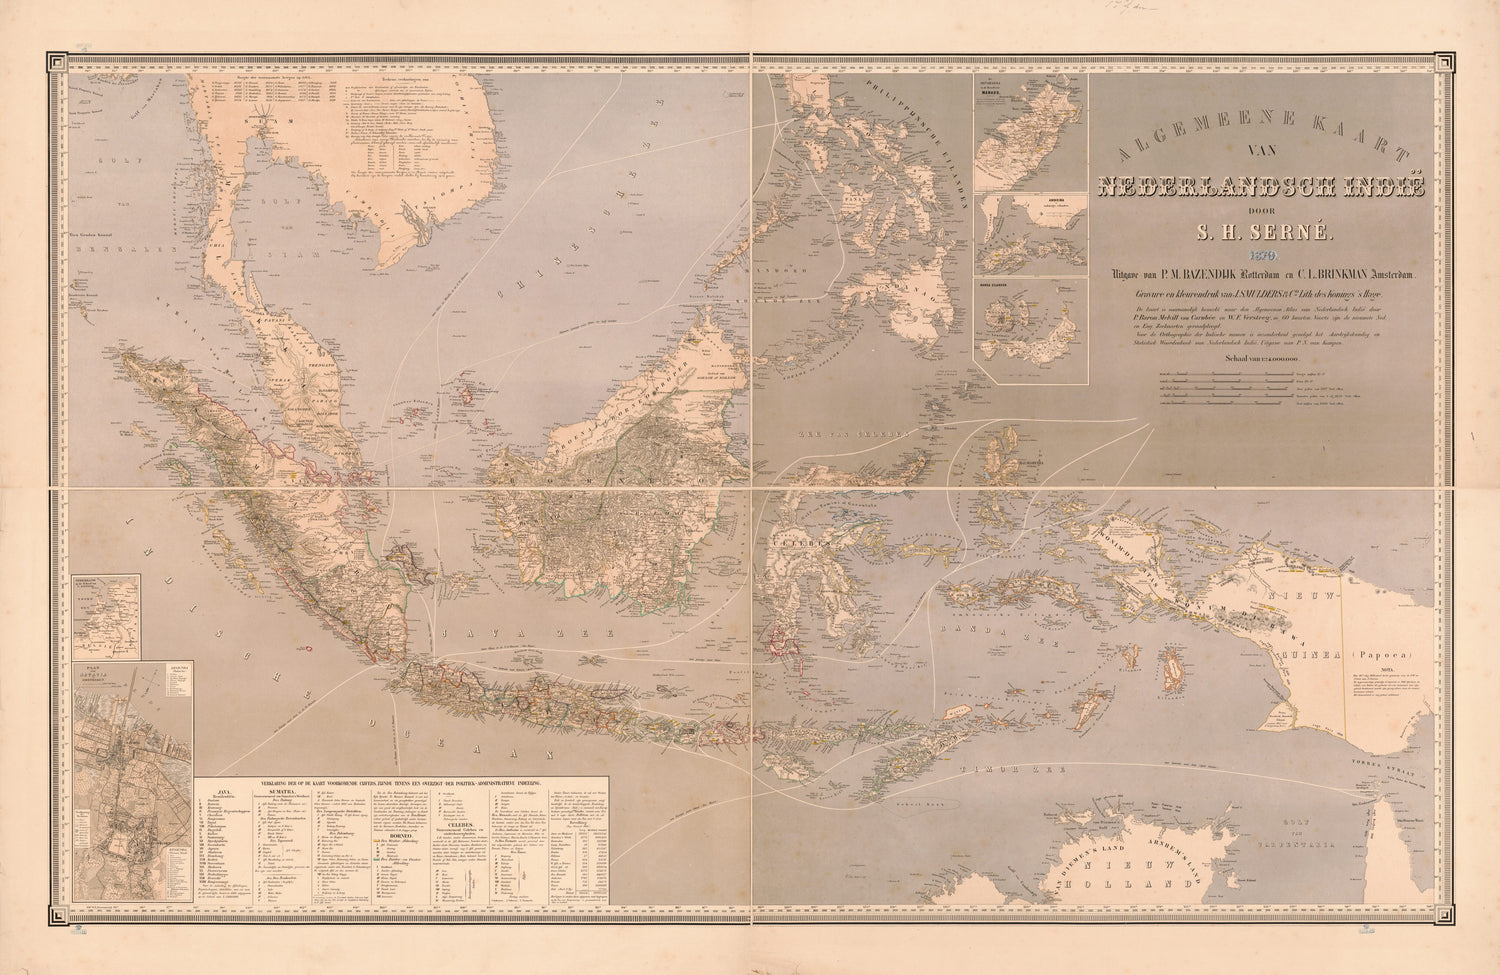 This old map of Algemeene Kaart Van Nederlandsch Indië from 1869 was created by S. H. Serné, W. F. Versteeg in 1869